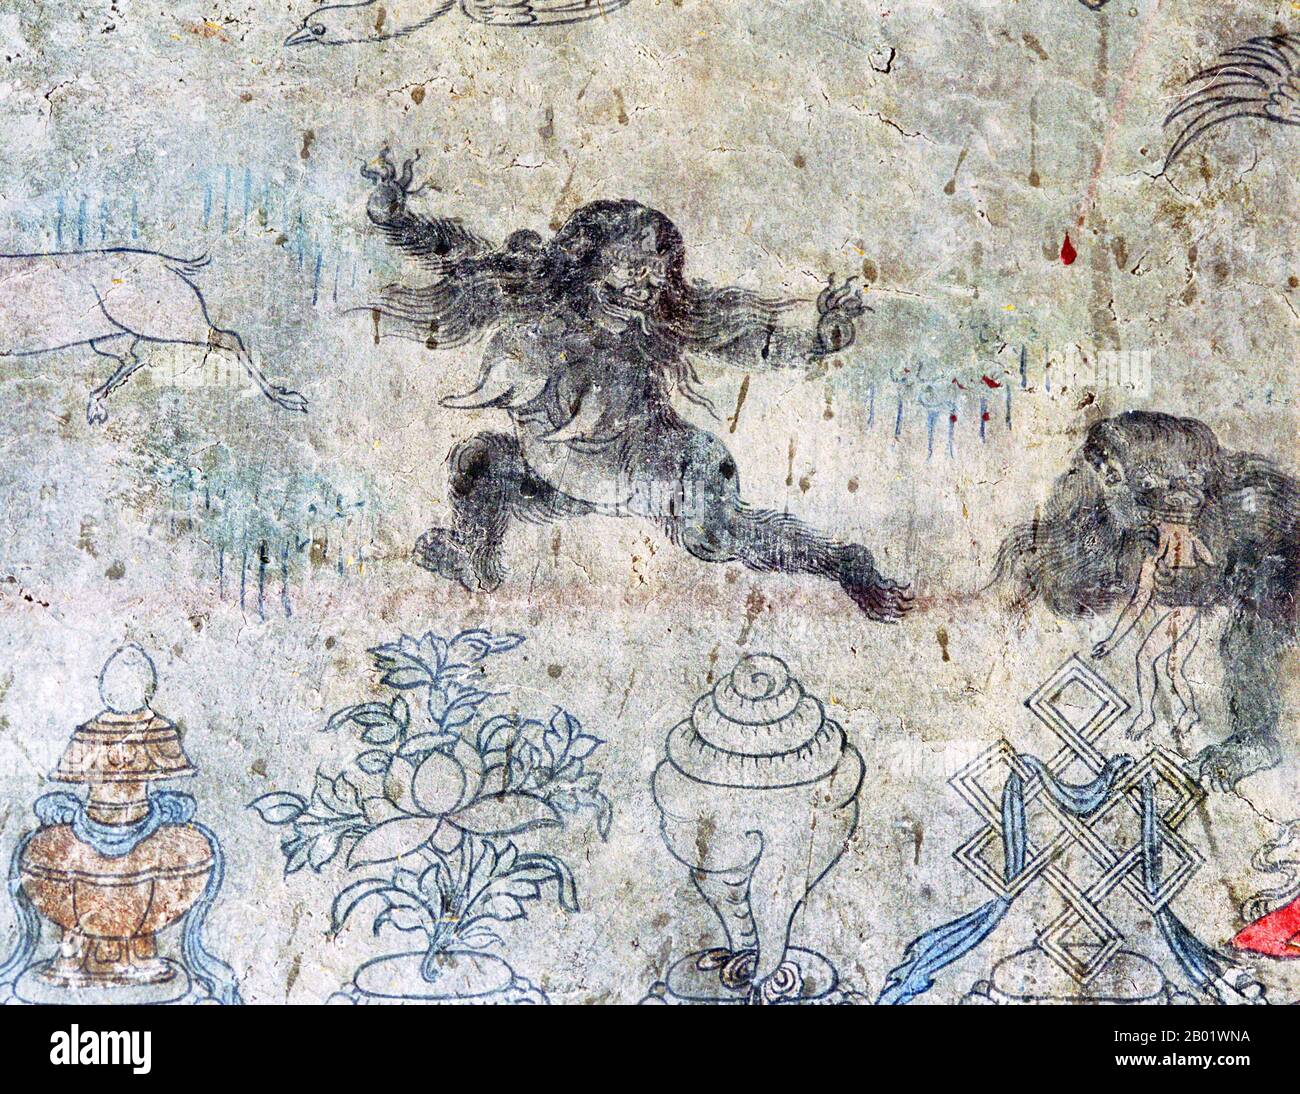 Cina/Tibet: Murale tibetano che mostra due "migo" o yeti, uno a destra che consuma un essere umano, c. fine del XIX secolo. Lo Yeti o abominevole pupazzo di neve è un criptide simile a una scimmia che si dice abita la regione himalayana del Nepal e del Tibet. I nomi Yeti e Meh-Teh sono comunemente usati dalle popolazioni indigene della regione e fanno parte della loro storia e mitologia. Le storie degli Yeti emersero per la prima volta come sfaccettatura della cultura popolare occidentale nel XIX secolo. Migoi o mi-go si traduce come "uomo selvaggio". Foto Stock